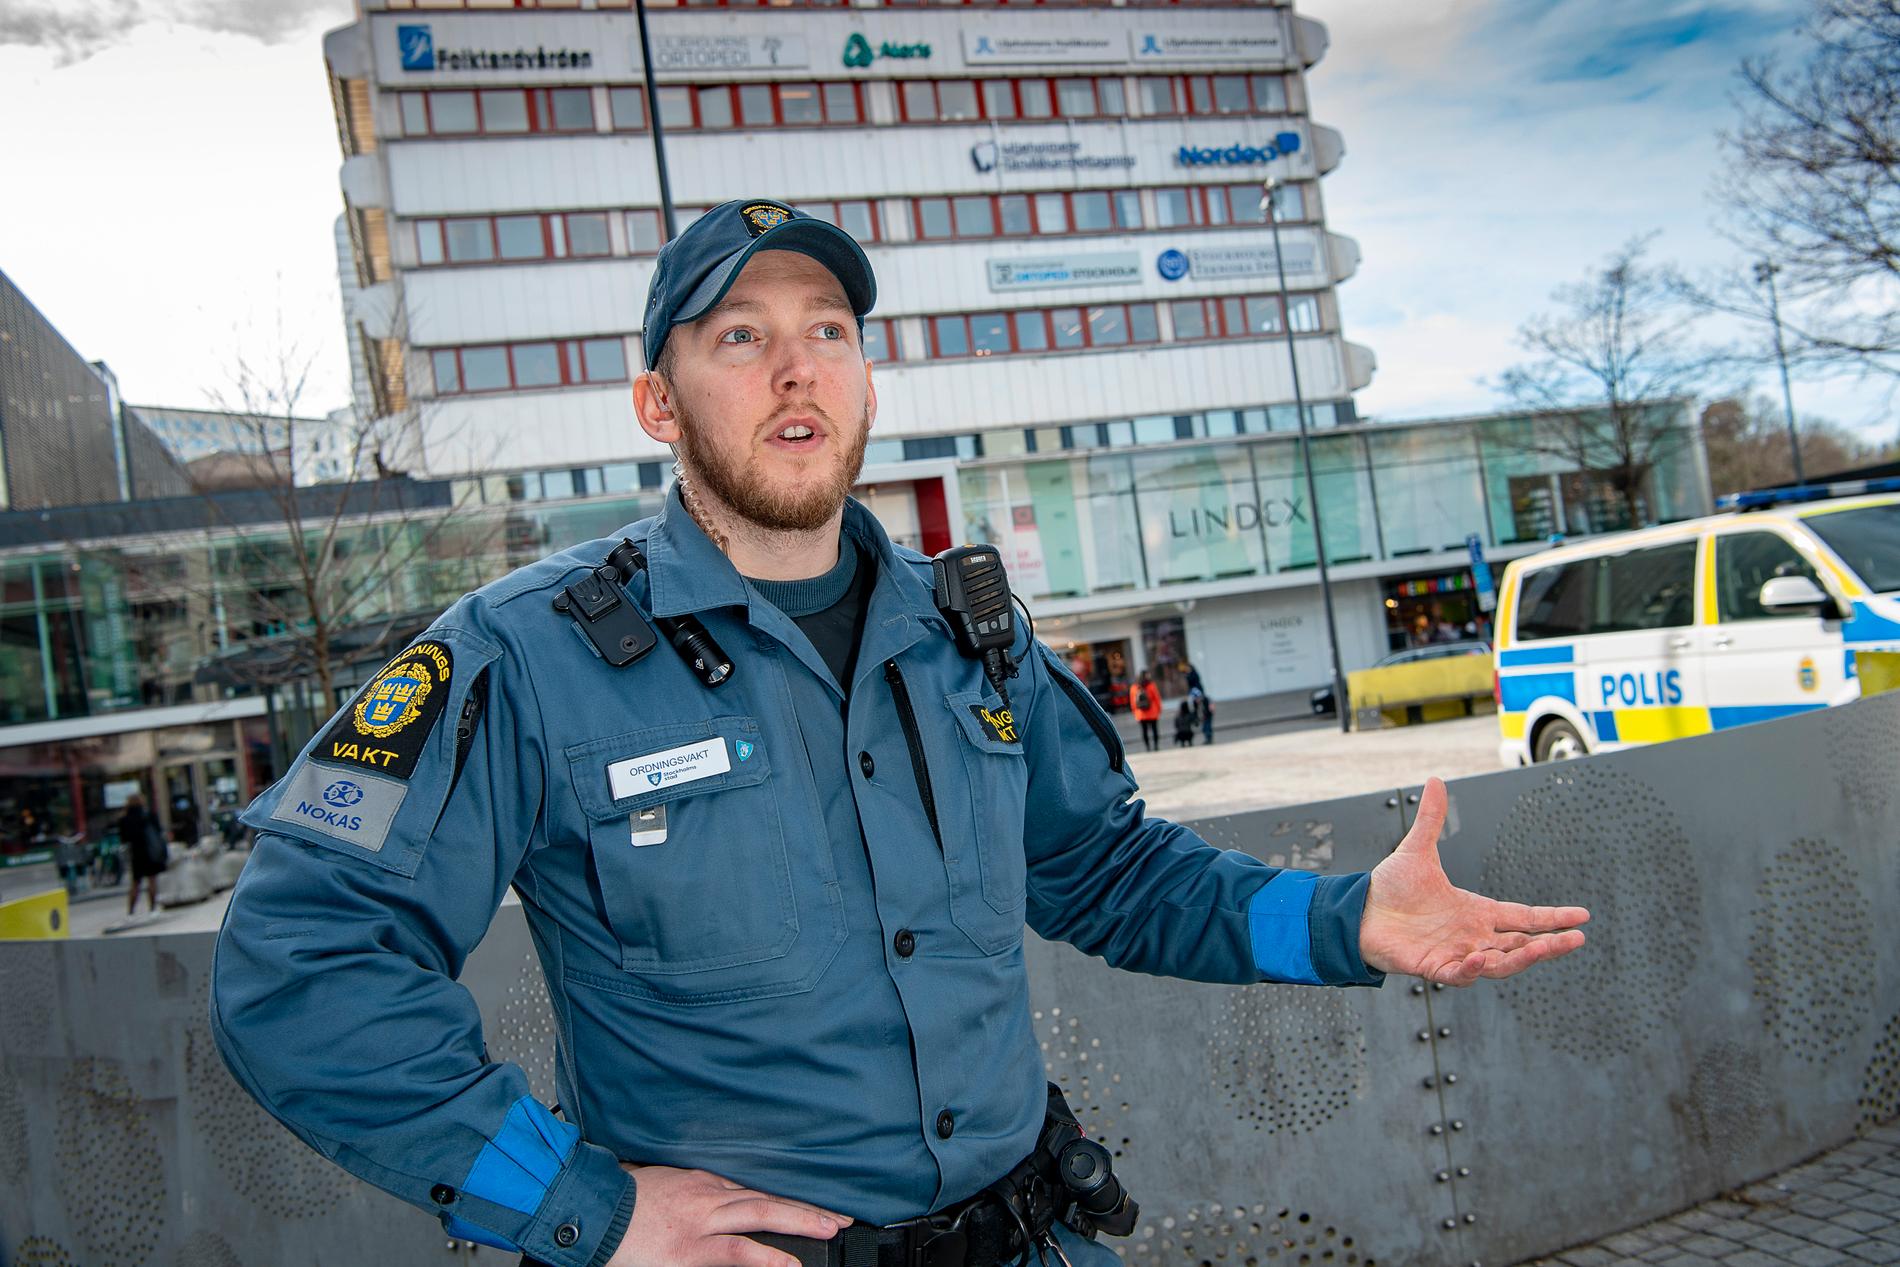 – Hela samhället känns hårdare. Man kan hålla på och brottas med någon som man har sett angripa tre olika personer och då lägger sig folk i och gör rena fritagningsförsök, säger Eric, som arbetar som ordningsvakt på uppdrag av Stockholms stad.